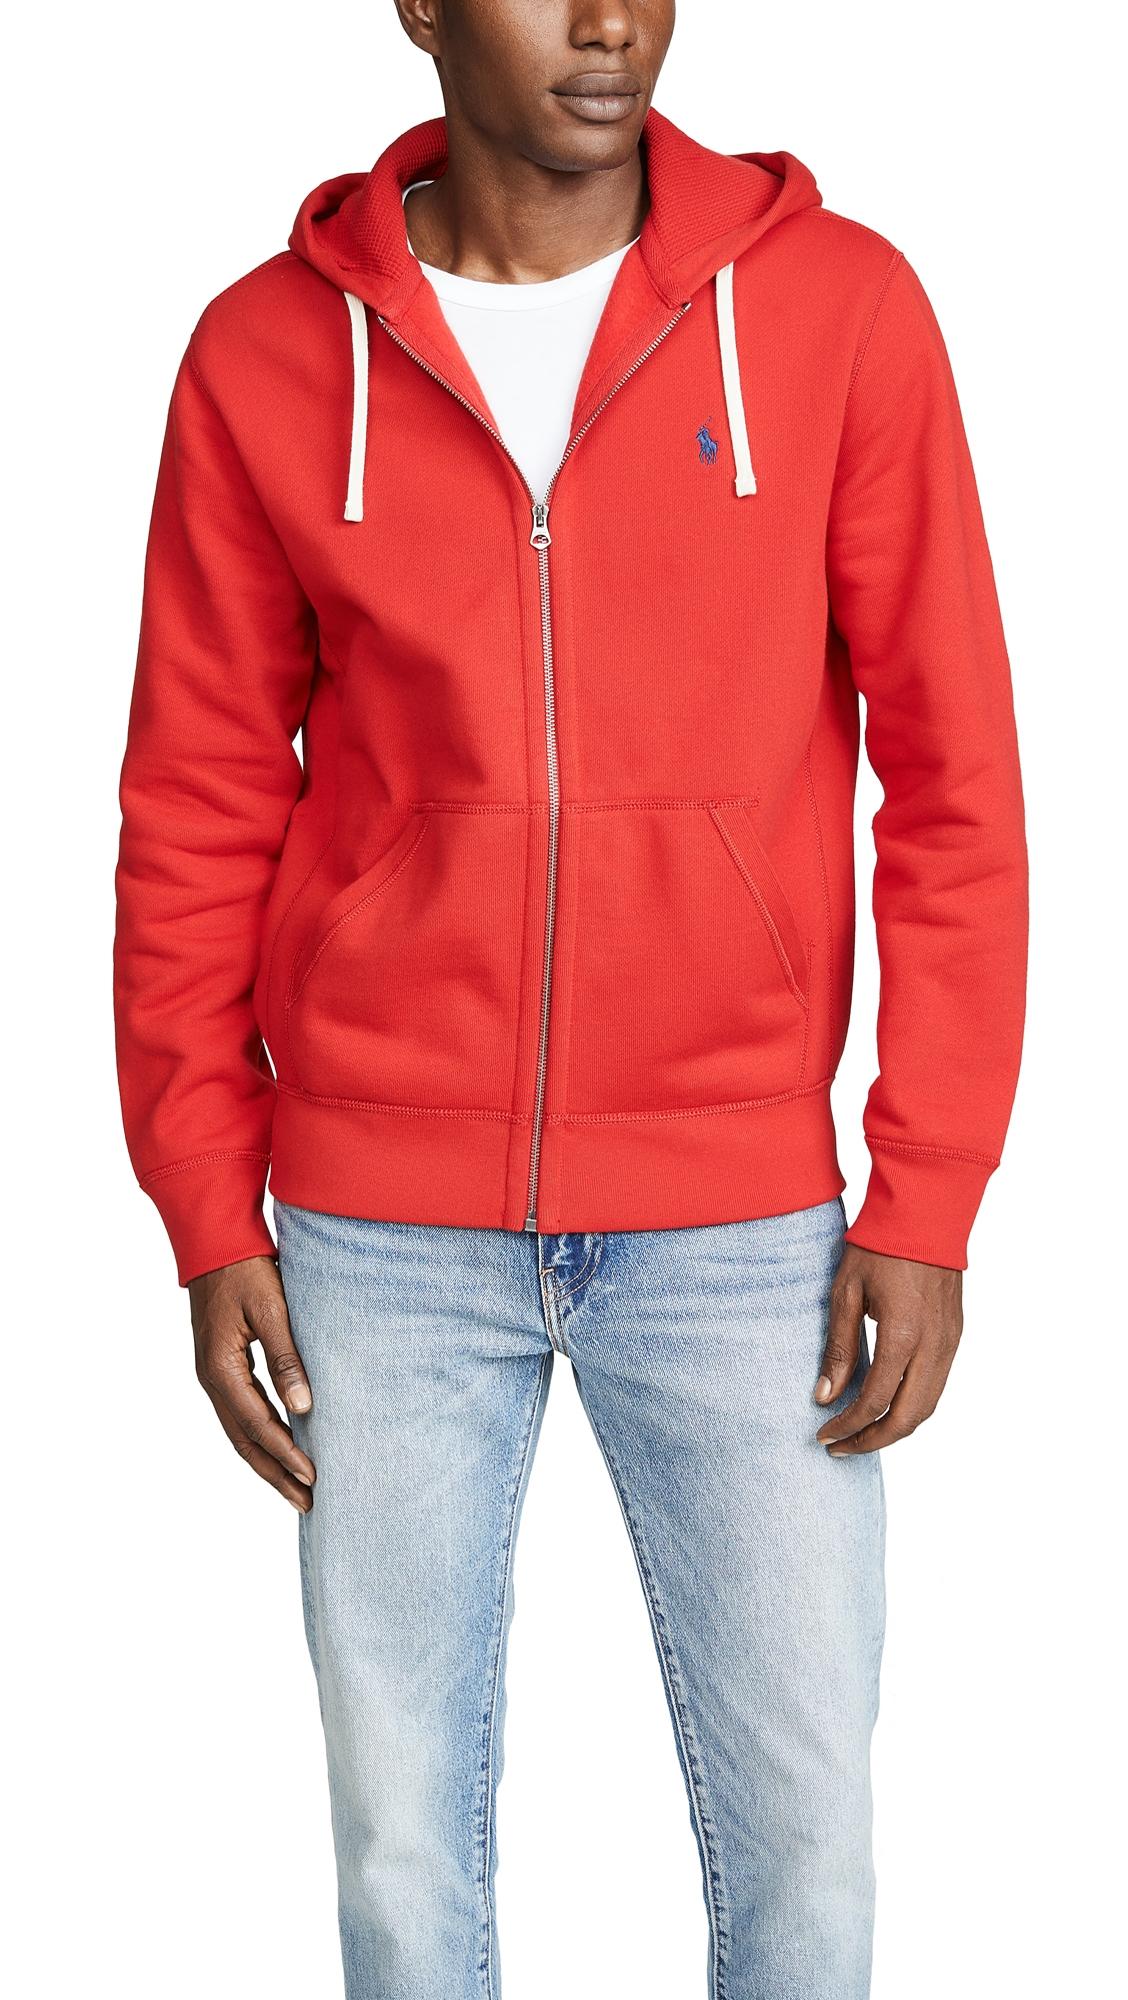 Polo Ralph Lauren Fleece Zip Hoodie in Red for Men - Save 12% - Lyst